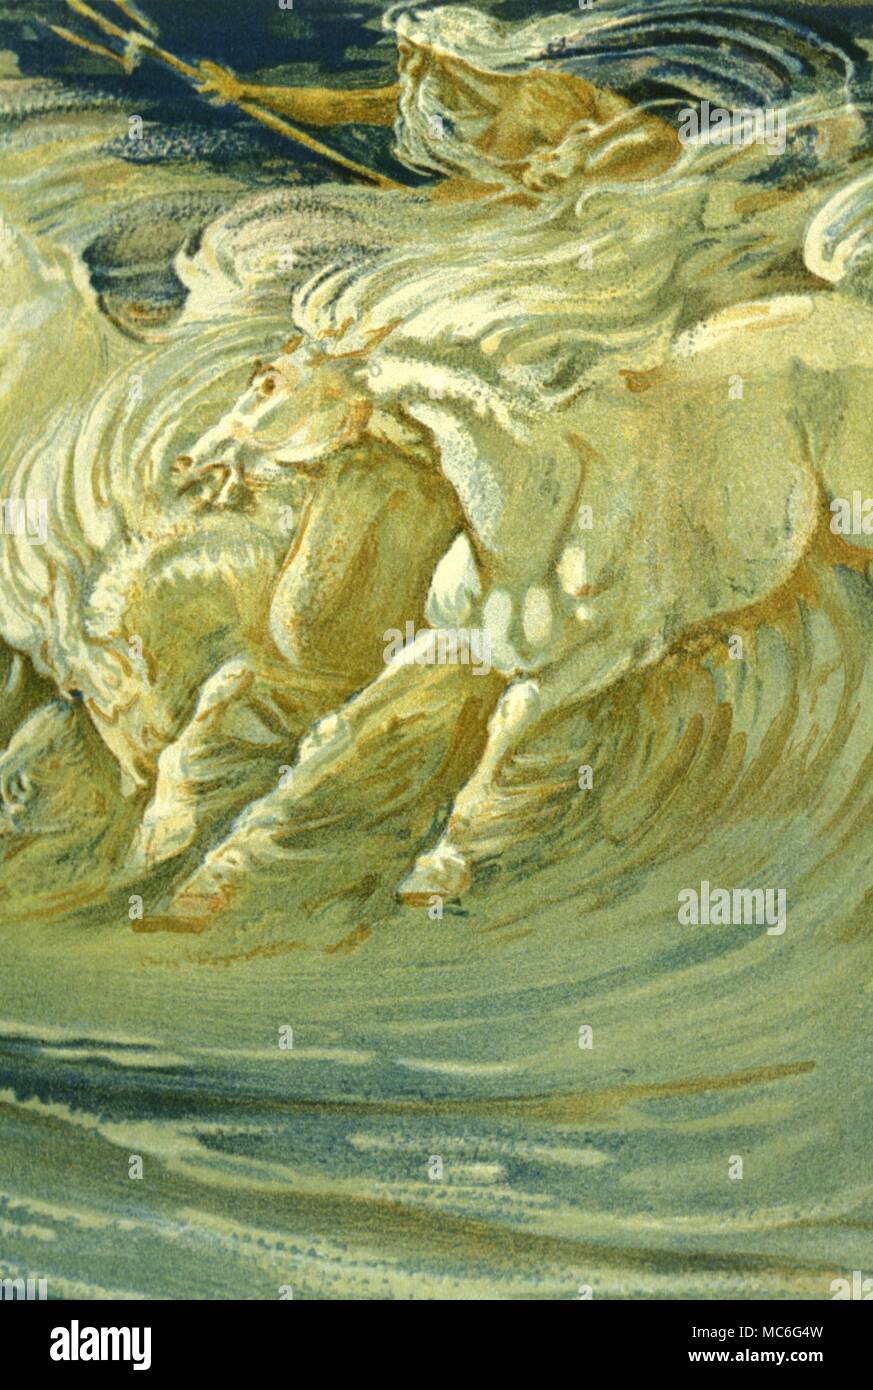 La mythologie grecque - Poseidon Poseidon avec ses chevaux. Impression lithographique de l'esquisse par Walter Crane 1893 Banque D'Images